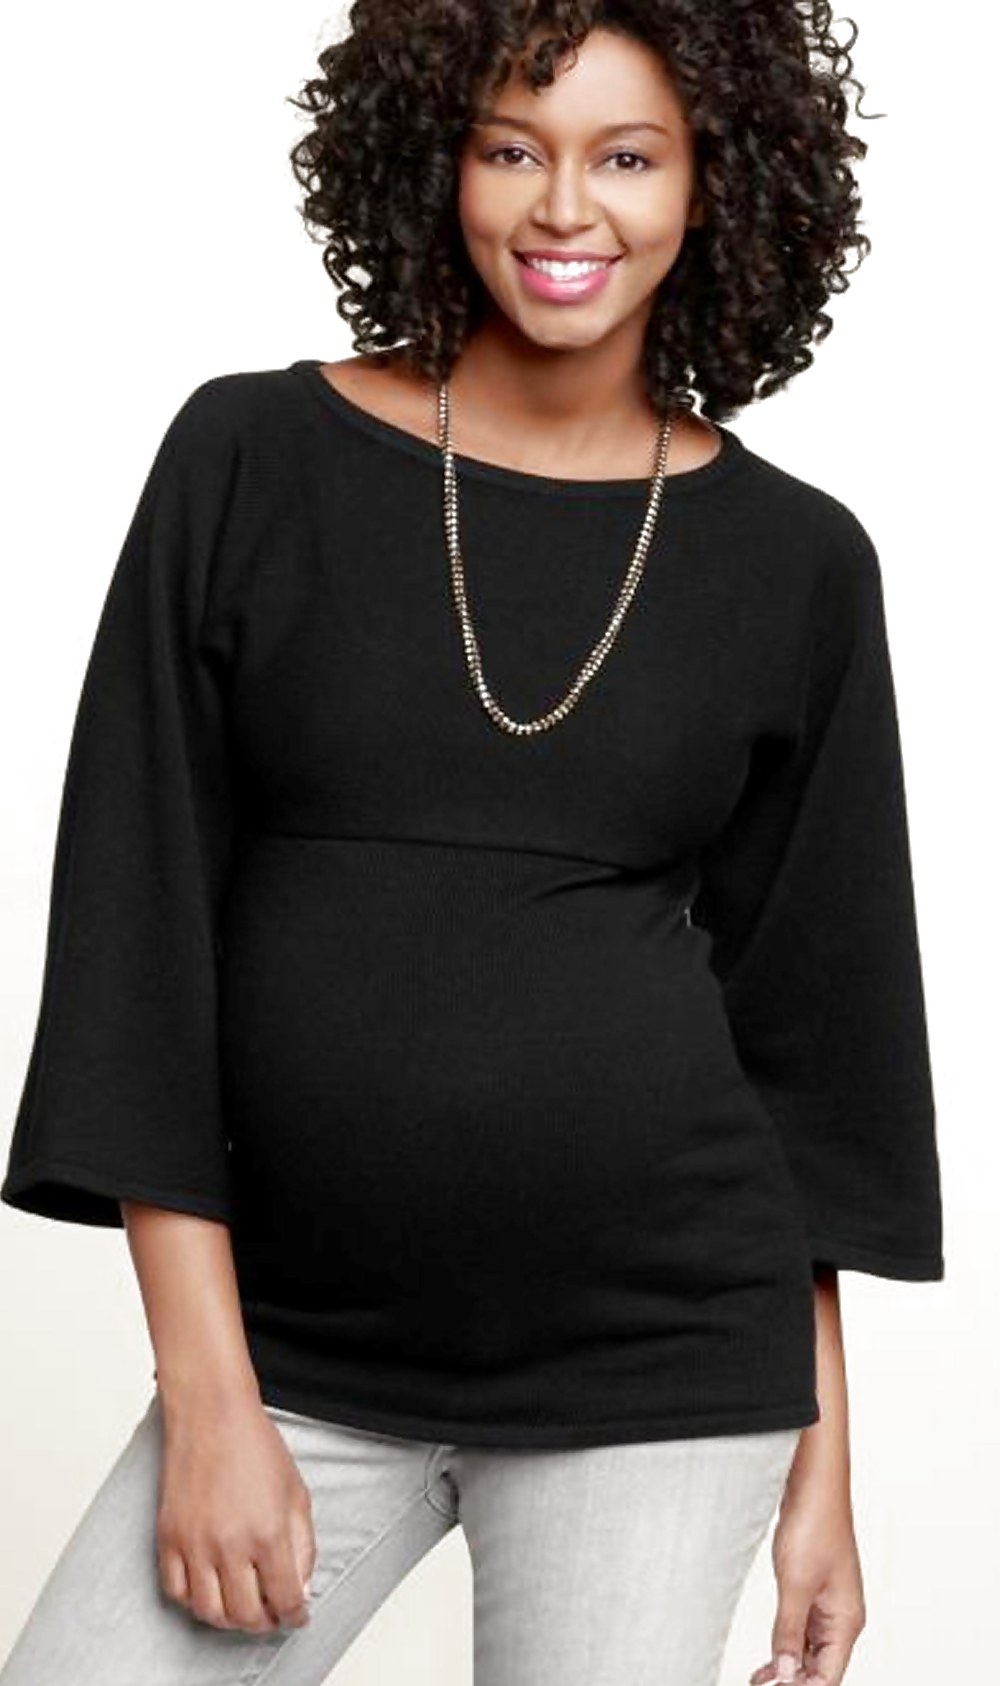 Sajata - lavoro di maternità della modella nera mentre è incinta
 #16800400